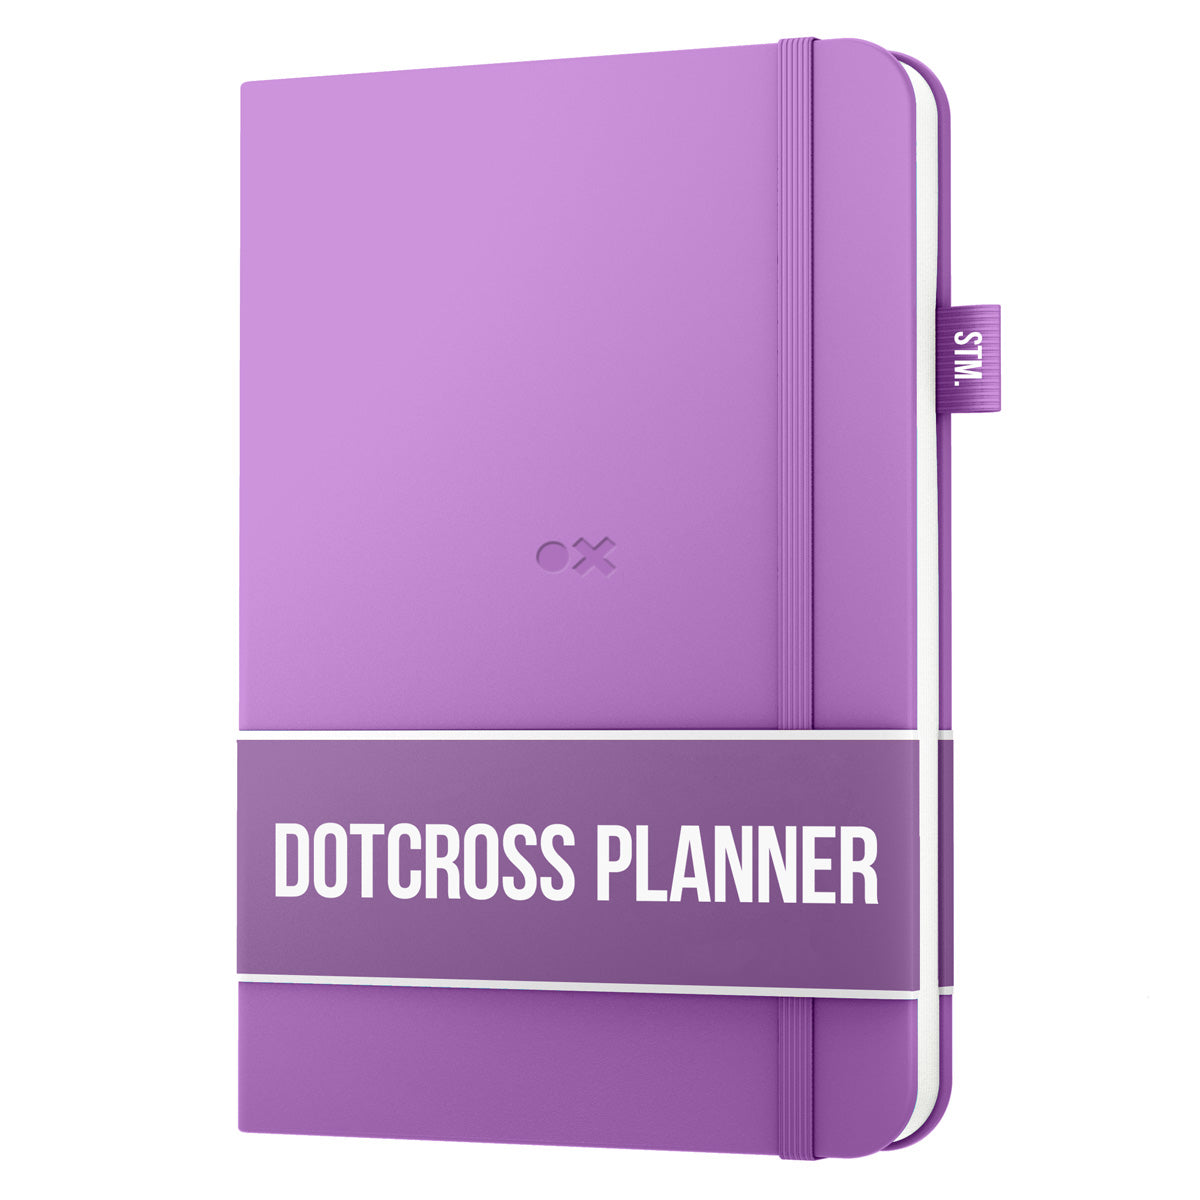 B5 DotCross Planner - Dated